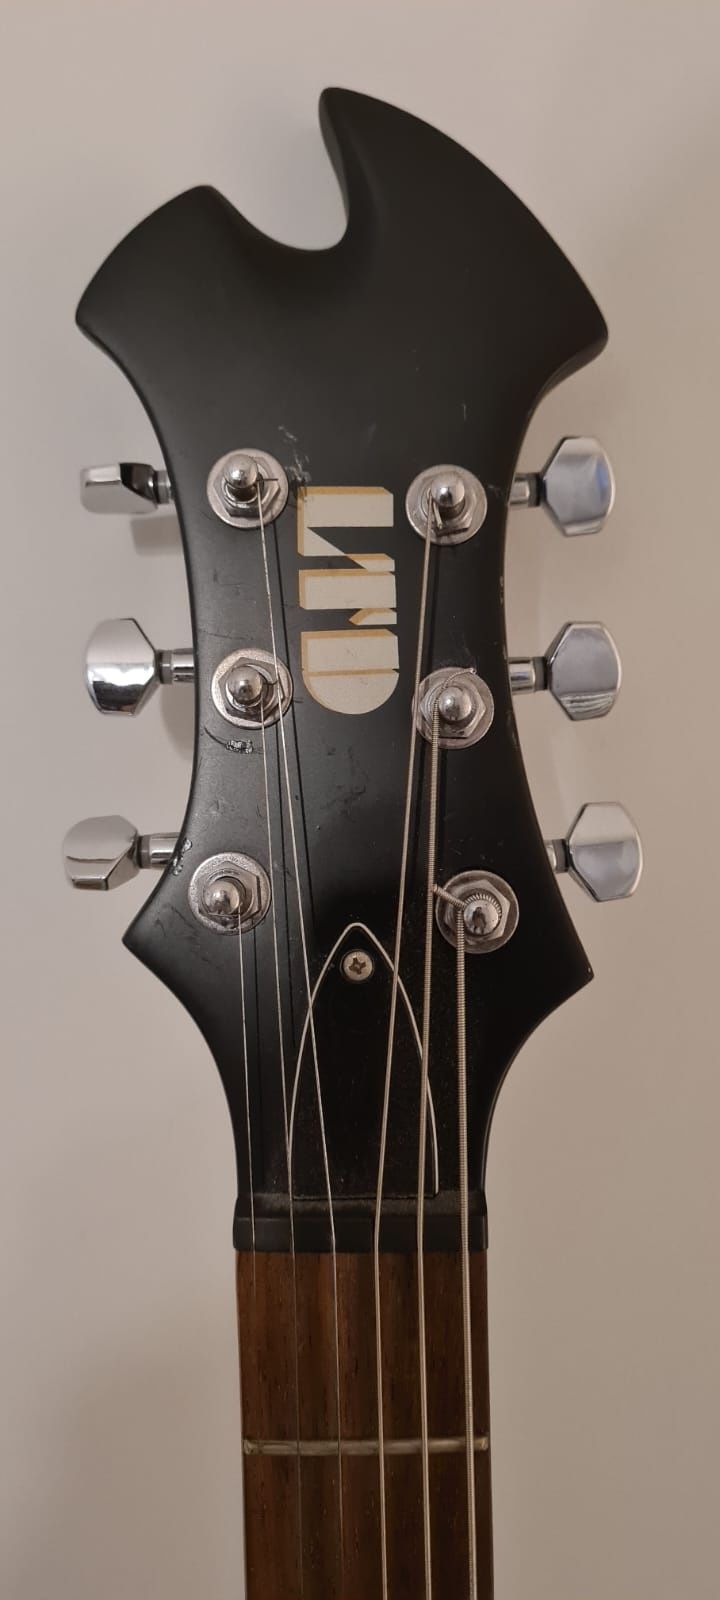 Guitarra Eléctrica para esquerdinos ESP LTD AX-50 com pickups activos